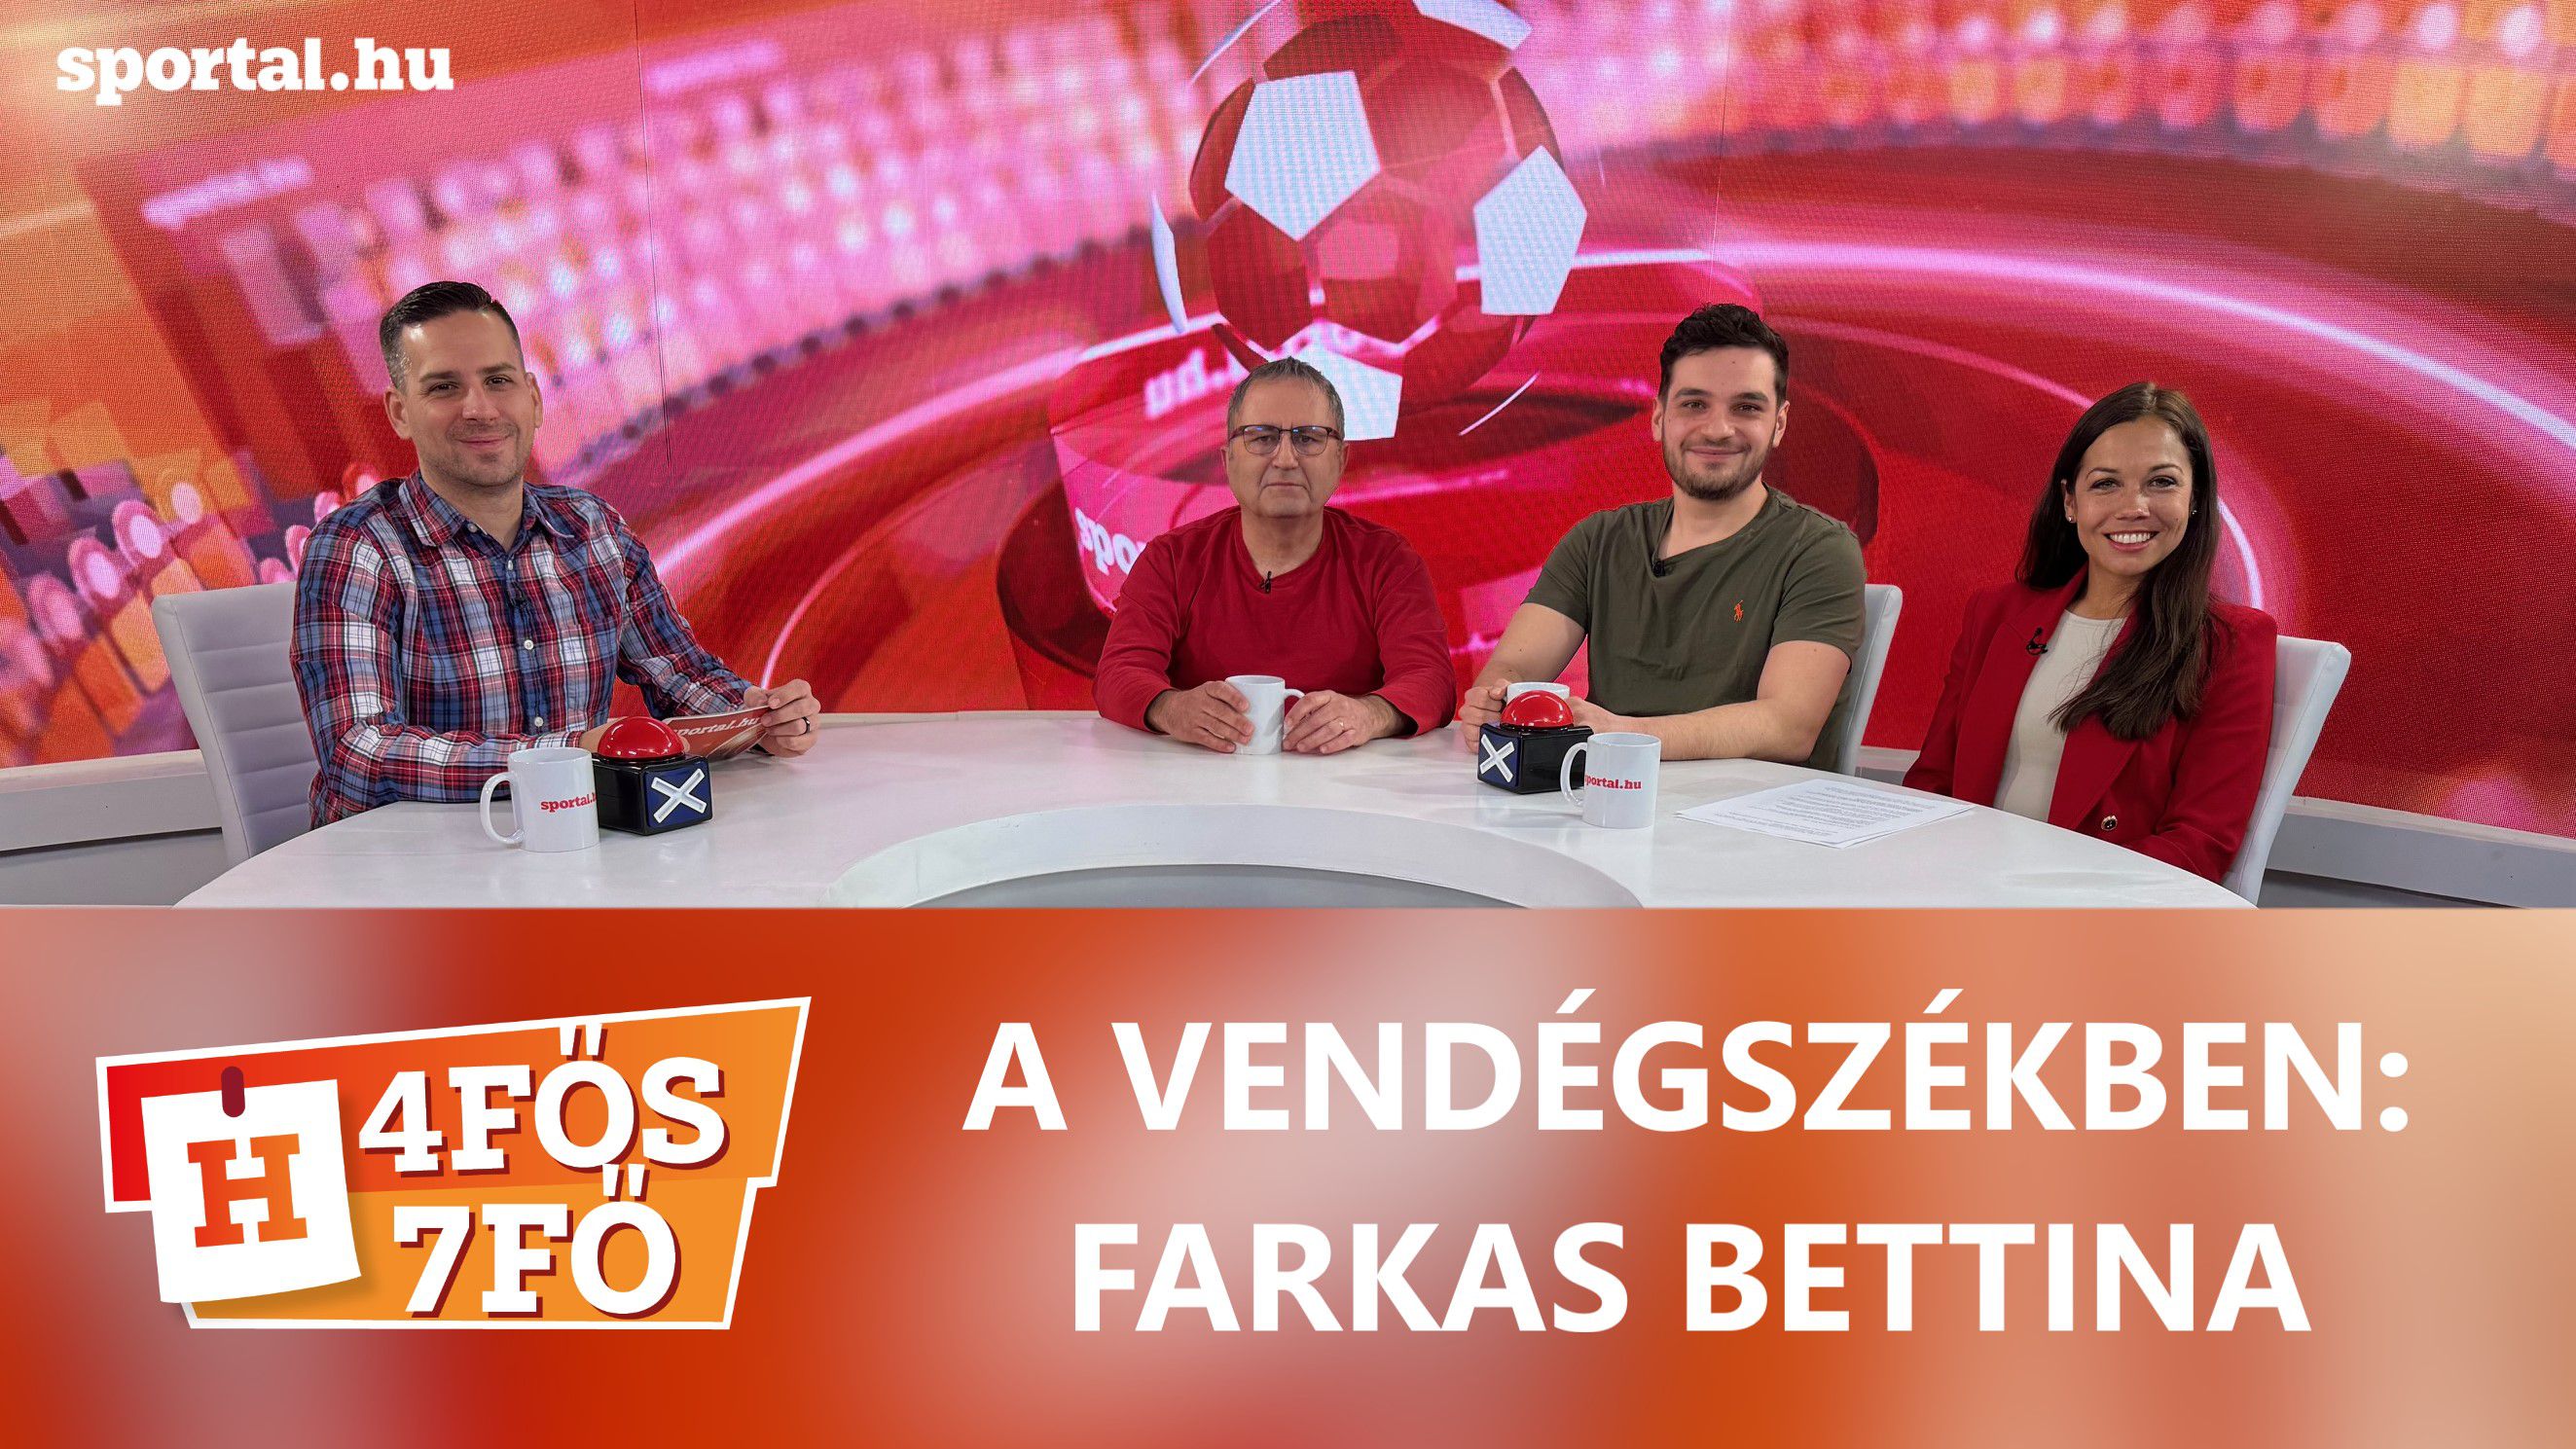 A Sportál Tv stúdiójában: Cselleng Ádám, Szekeres Tamás, Cseh Benjámin és Farkas Bettina